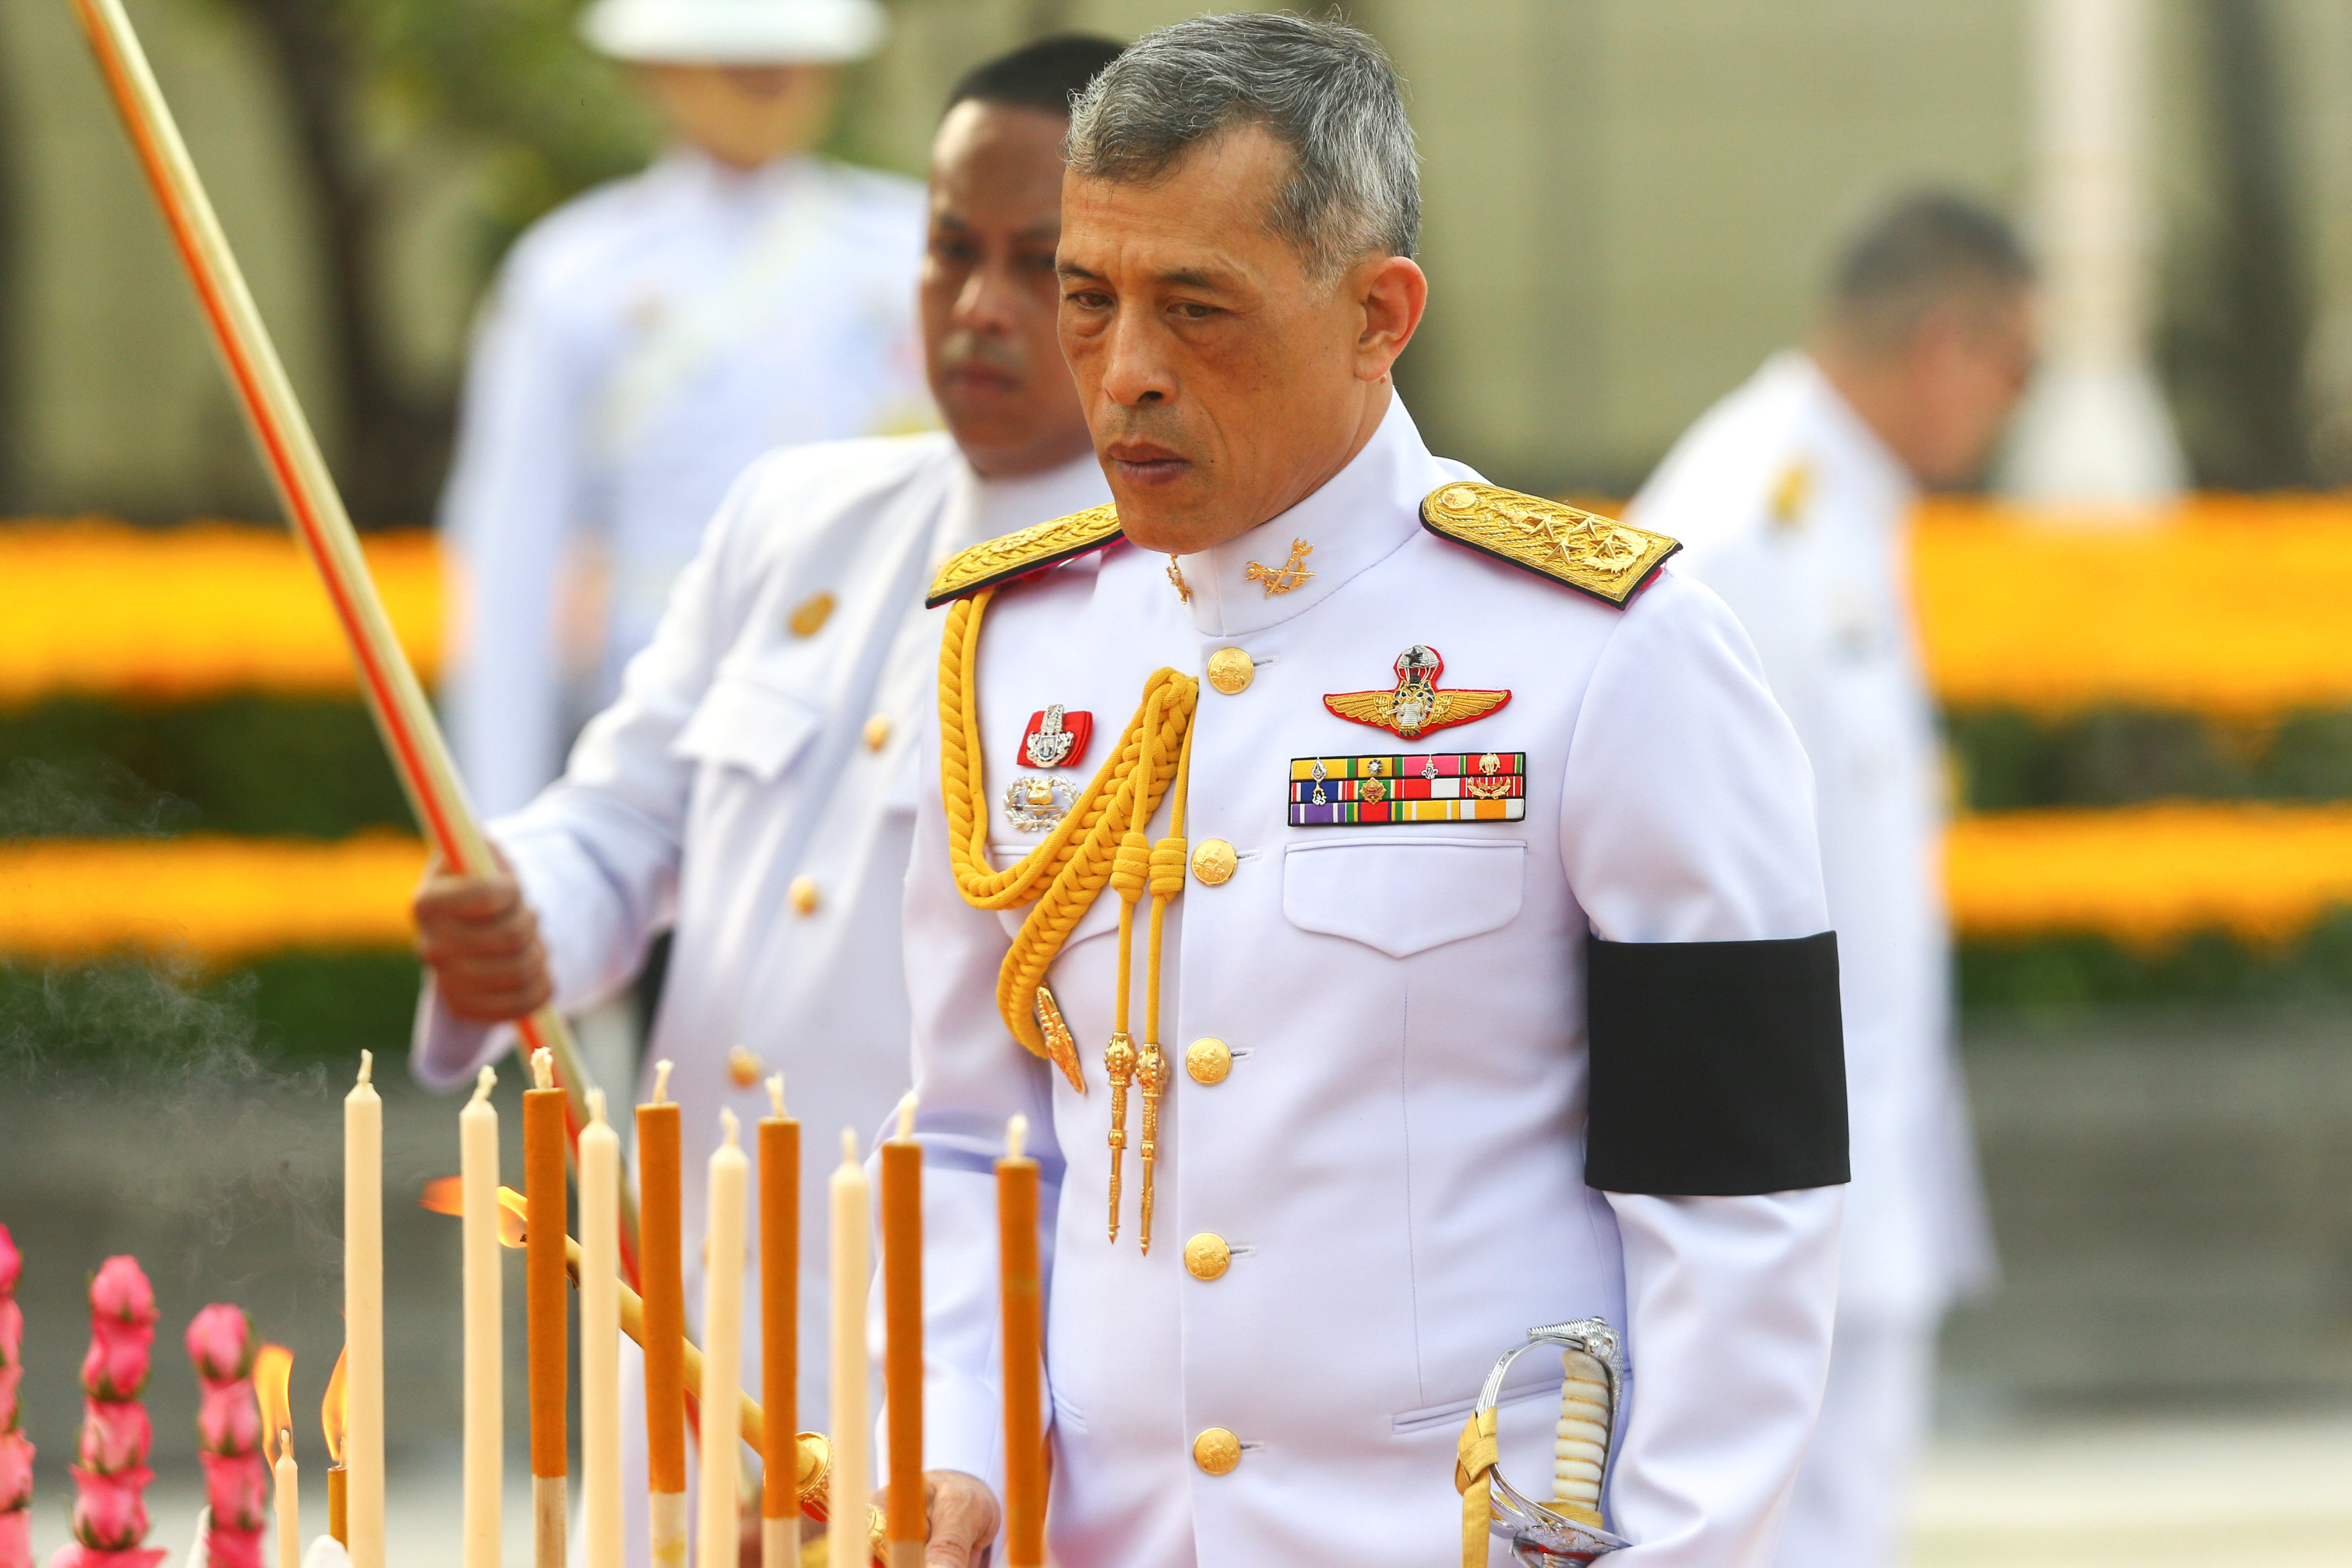 جانب من احتفال ملك تايلاند مها فاجيرالونغكورن بالتوقيع علي الدستور